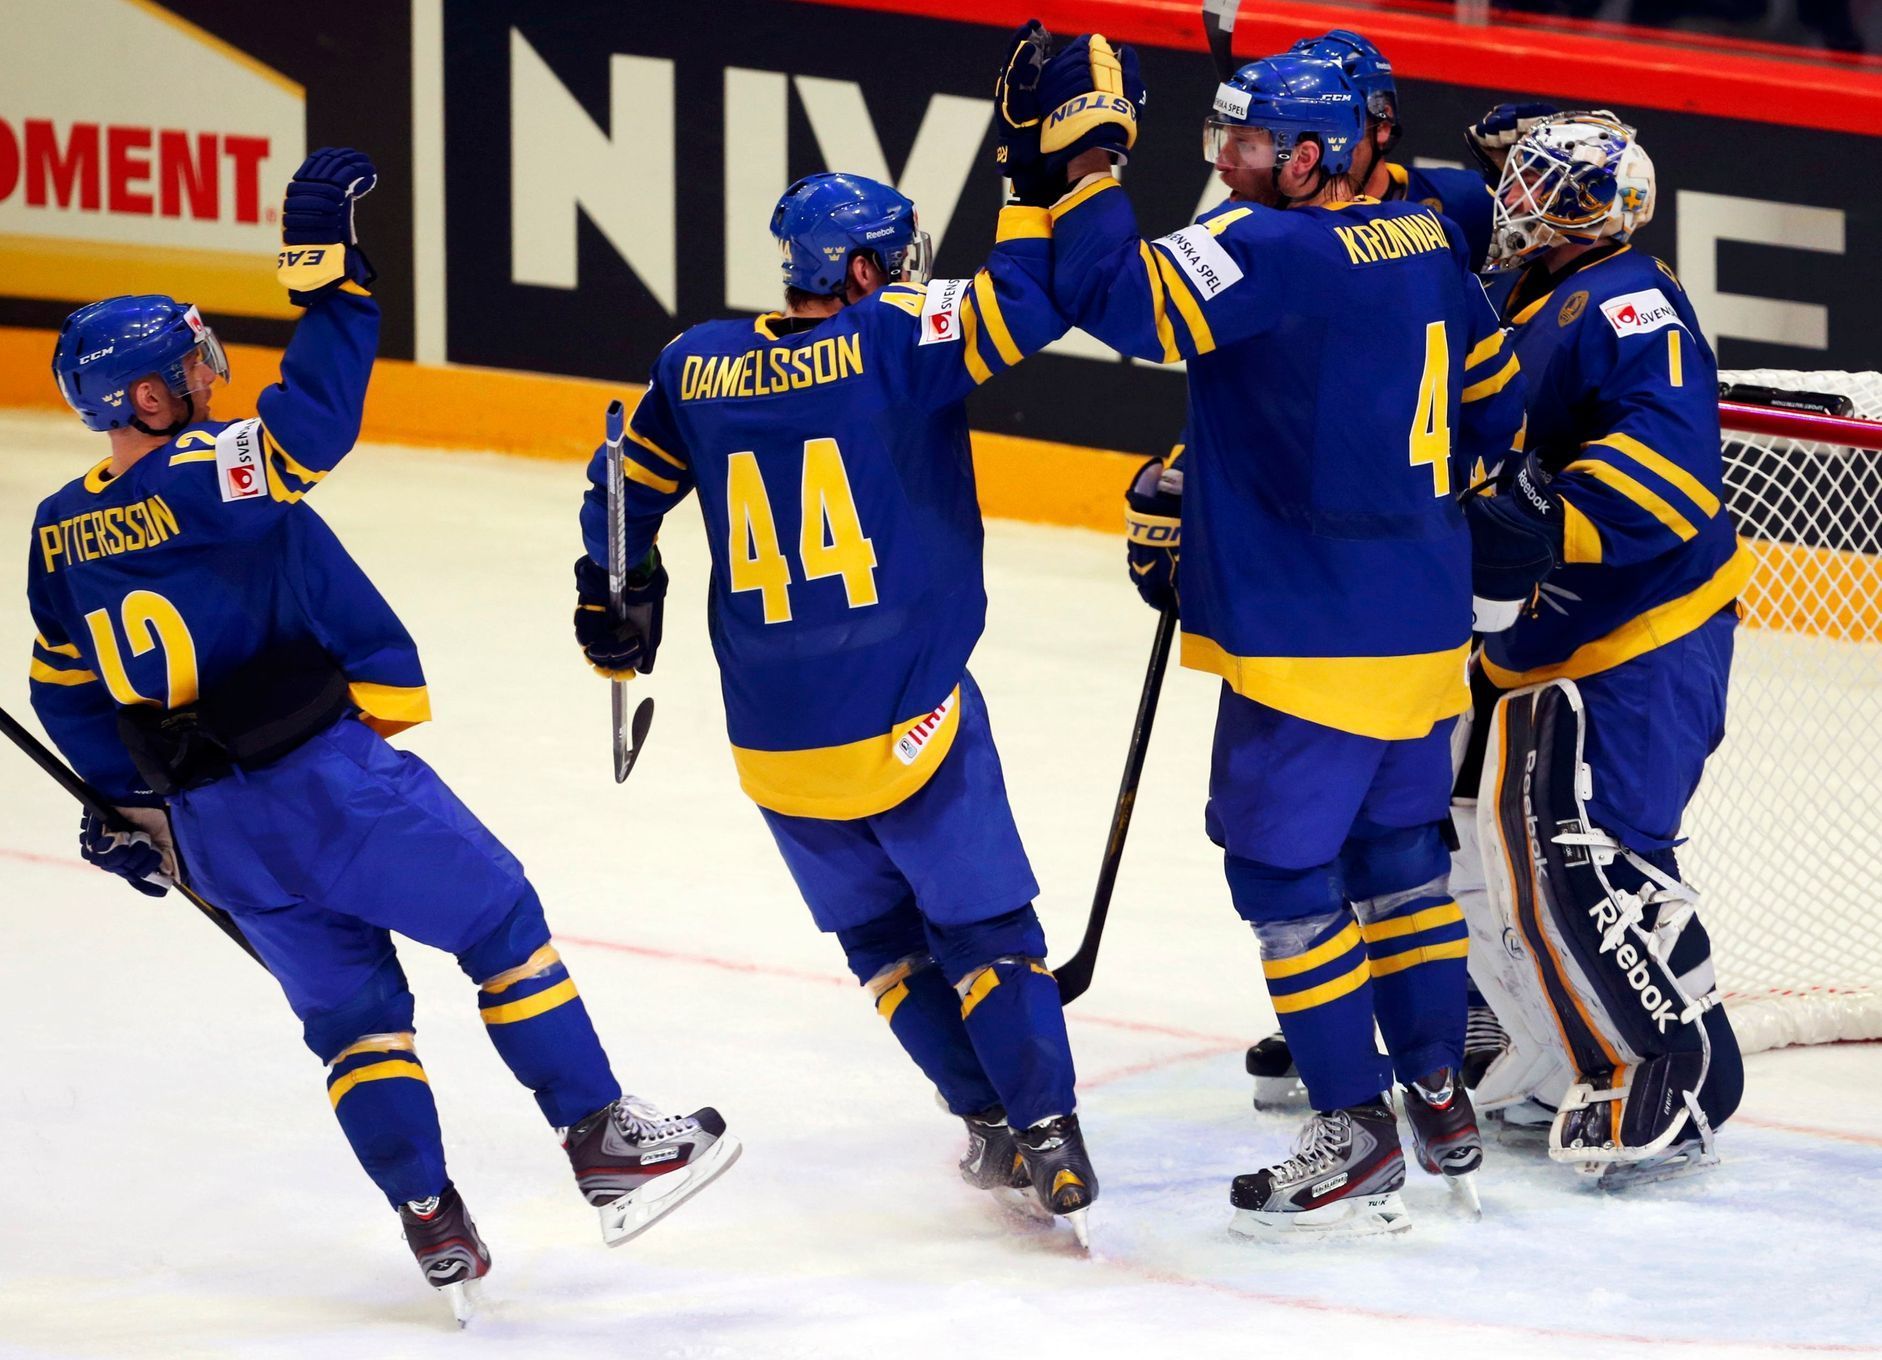 MS v hokeji 2013, Česko - Švédsko: Švédové slaví vítězství